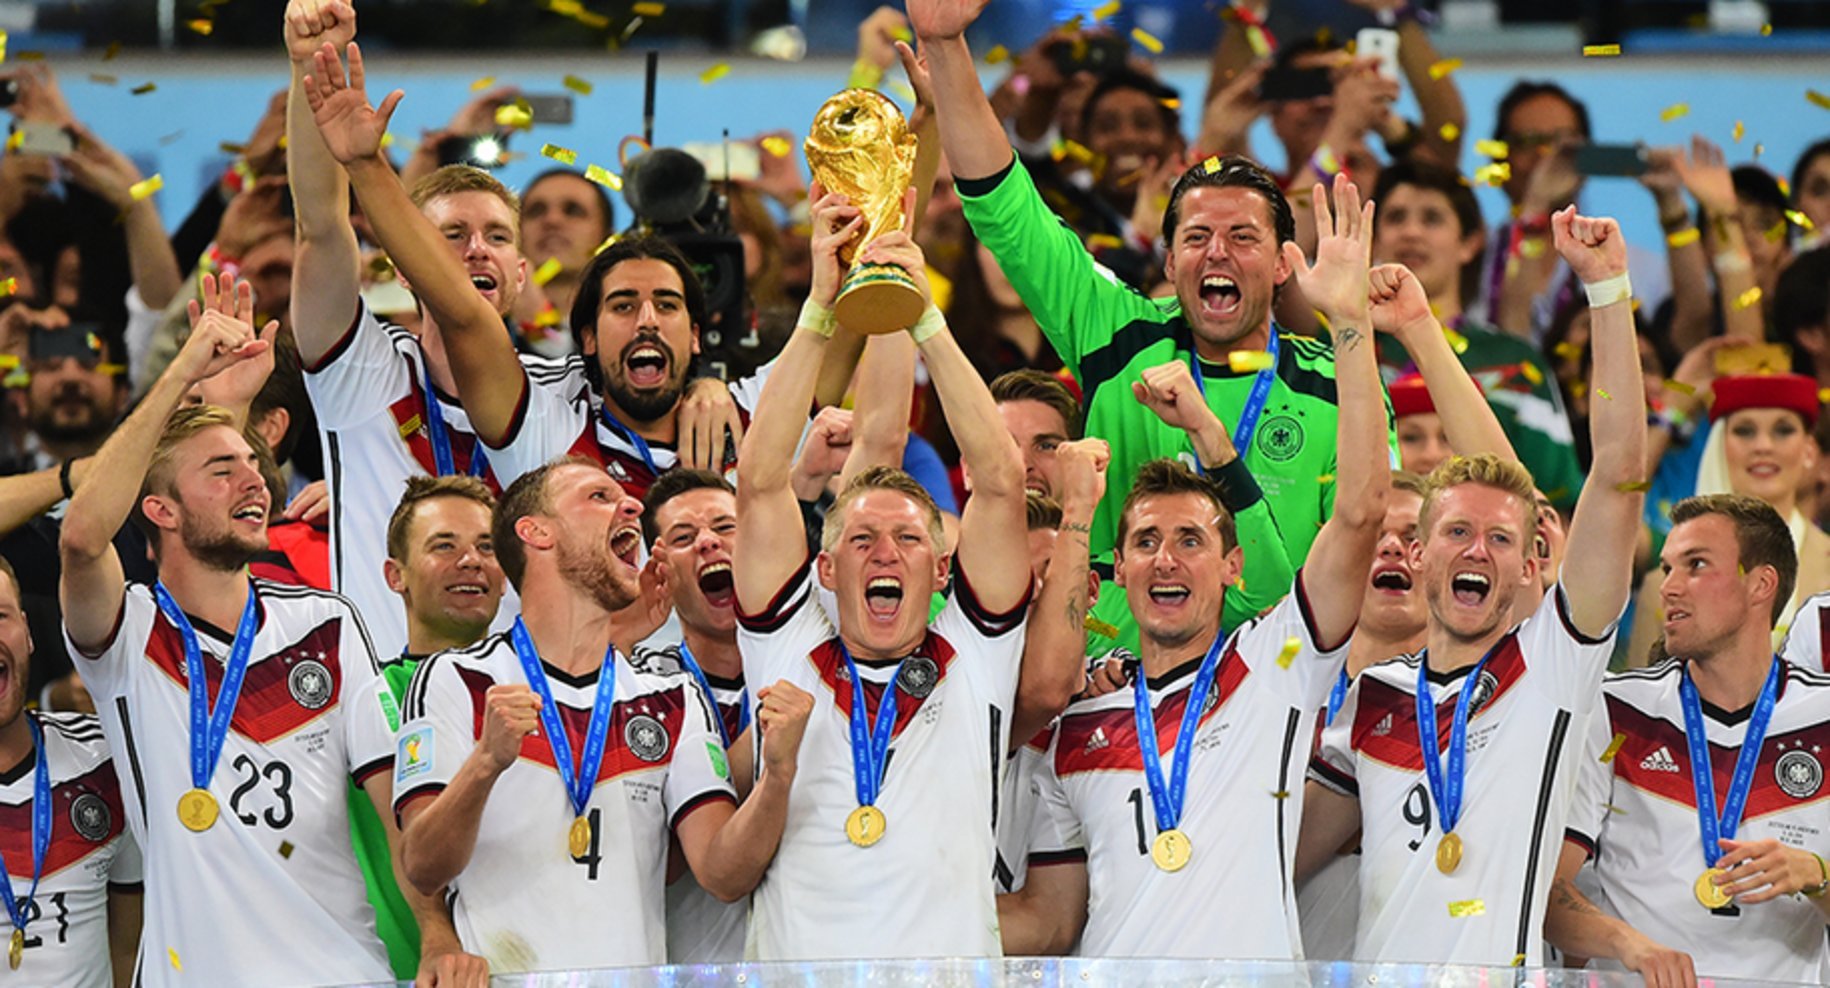 World cup 2014. Германия 2014 футбол World Cup. Германия чемпион 2014.